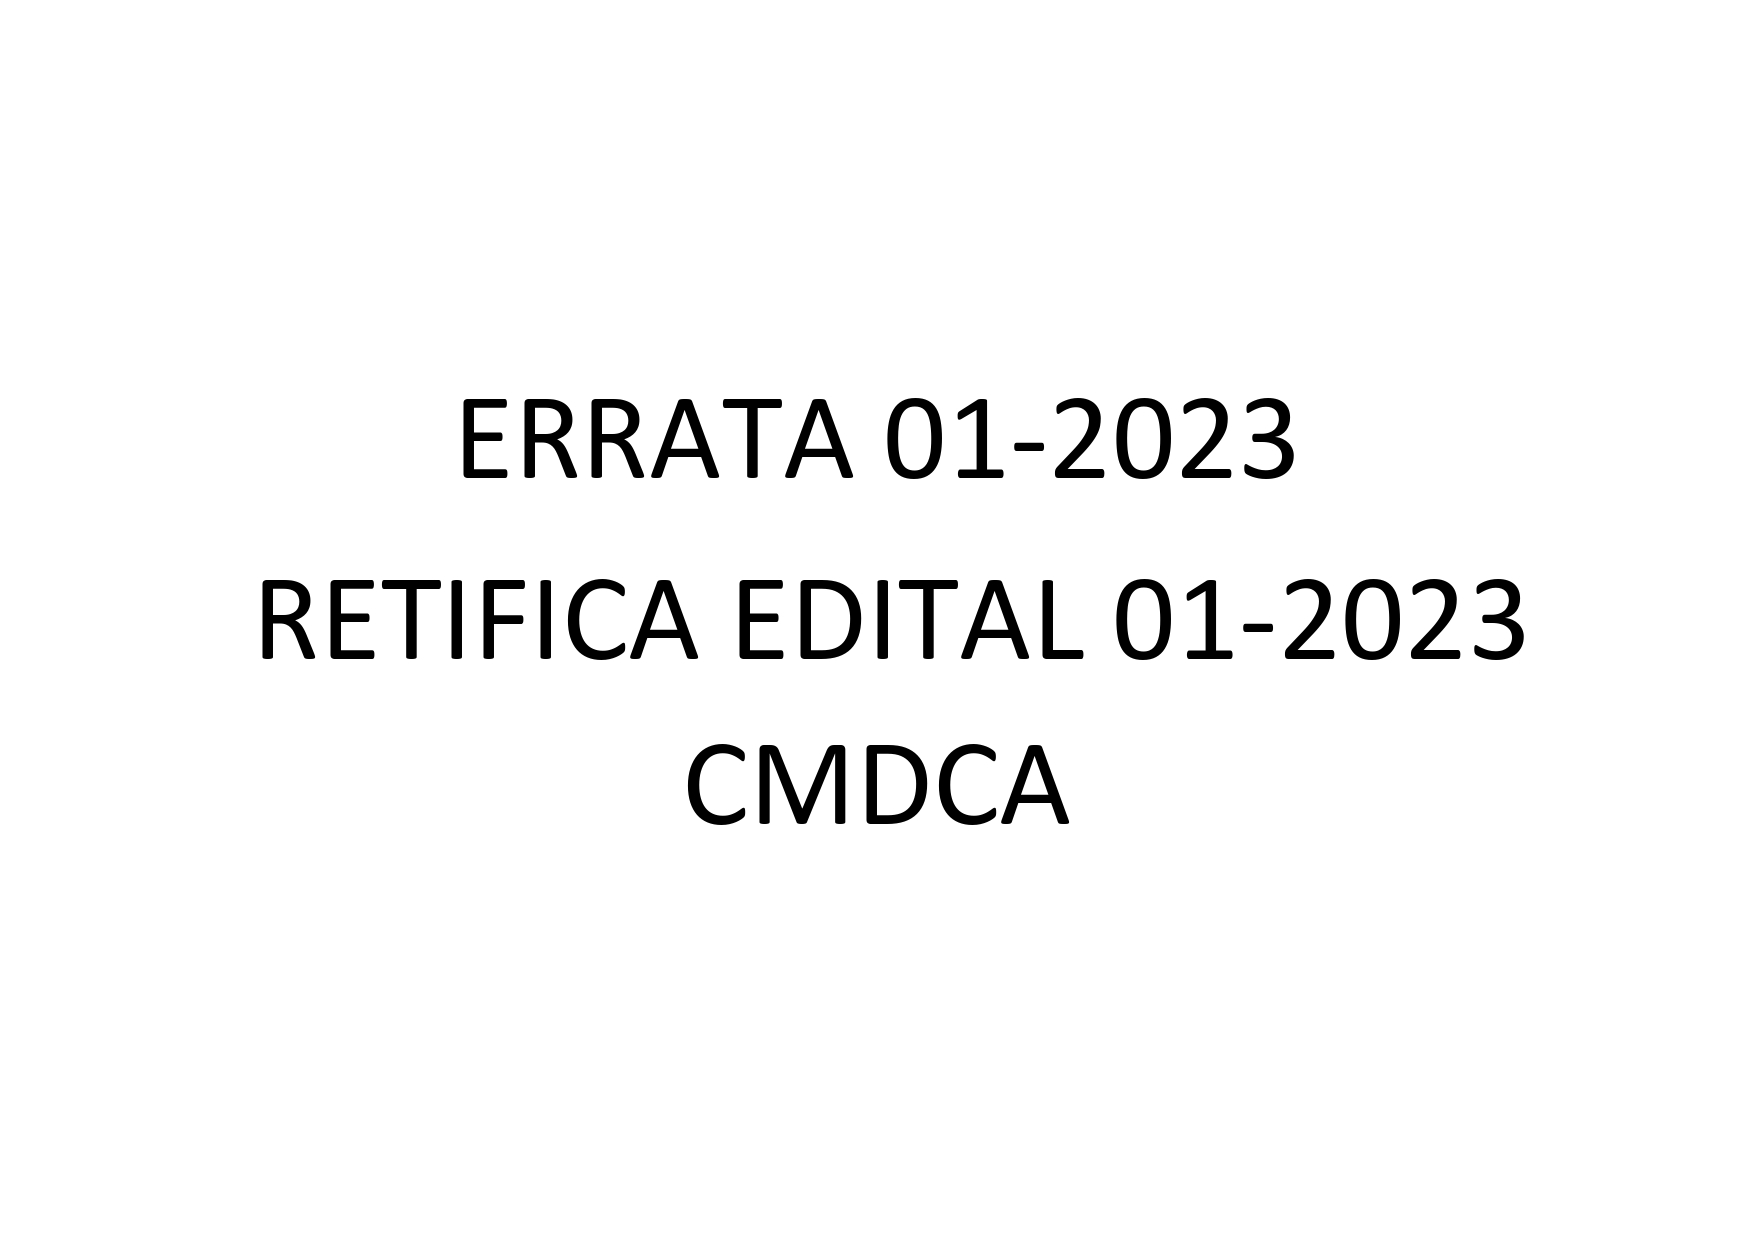 ERRATA 01-2023 - Retifica edital 01-2023 CMDCA